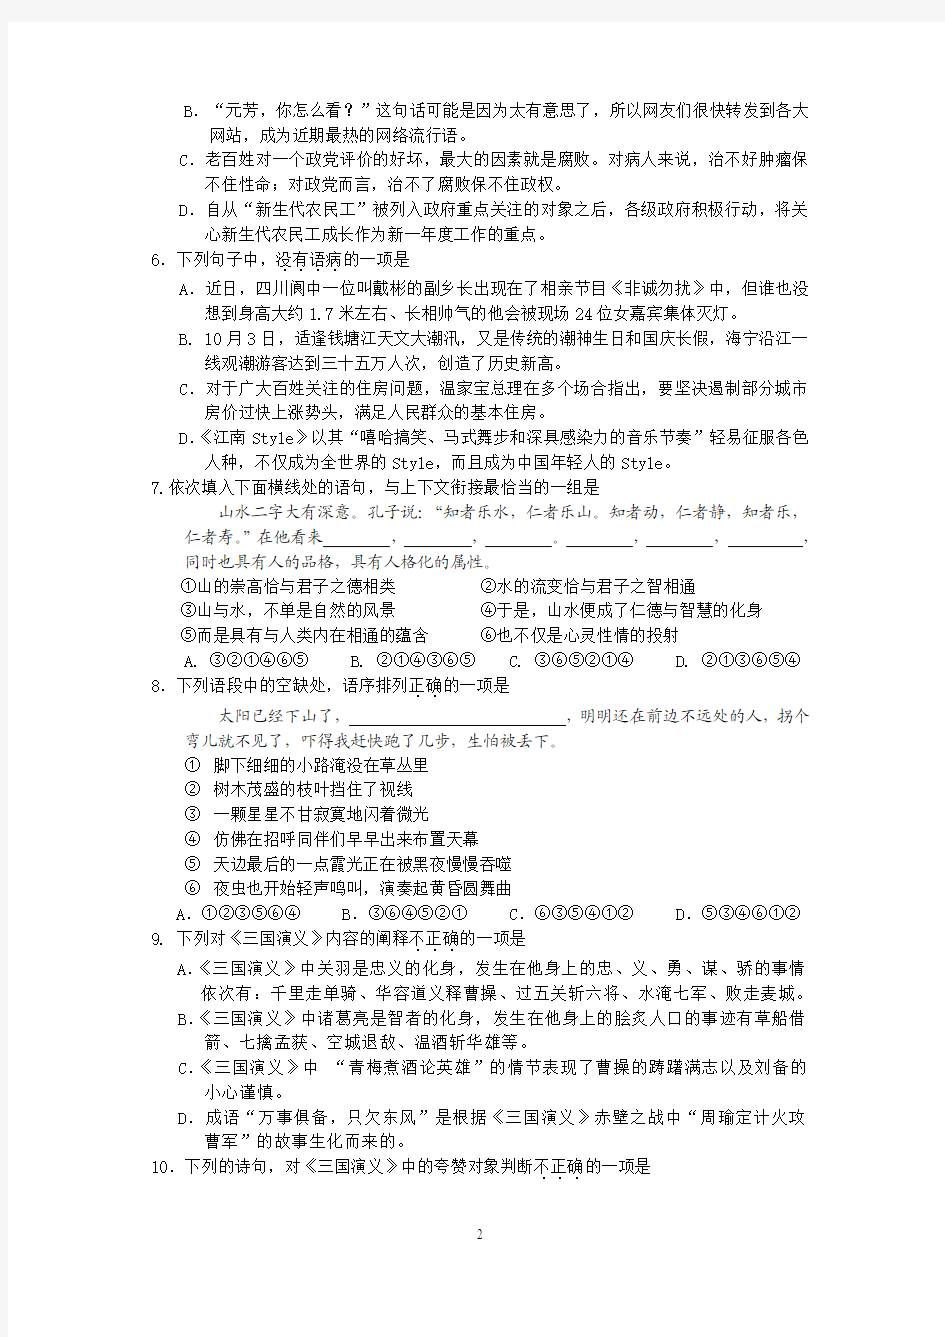 (语文)广州六中2013届高一上学期期中考试